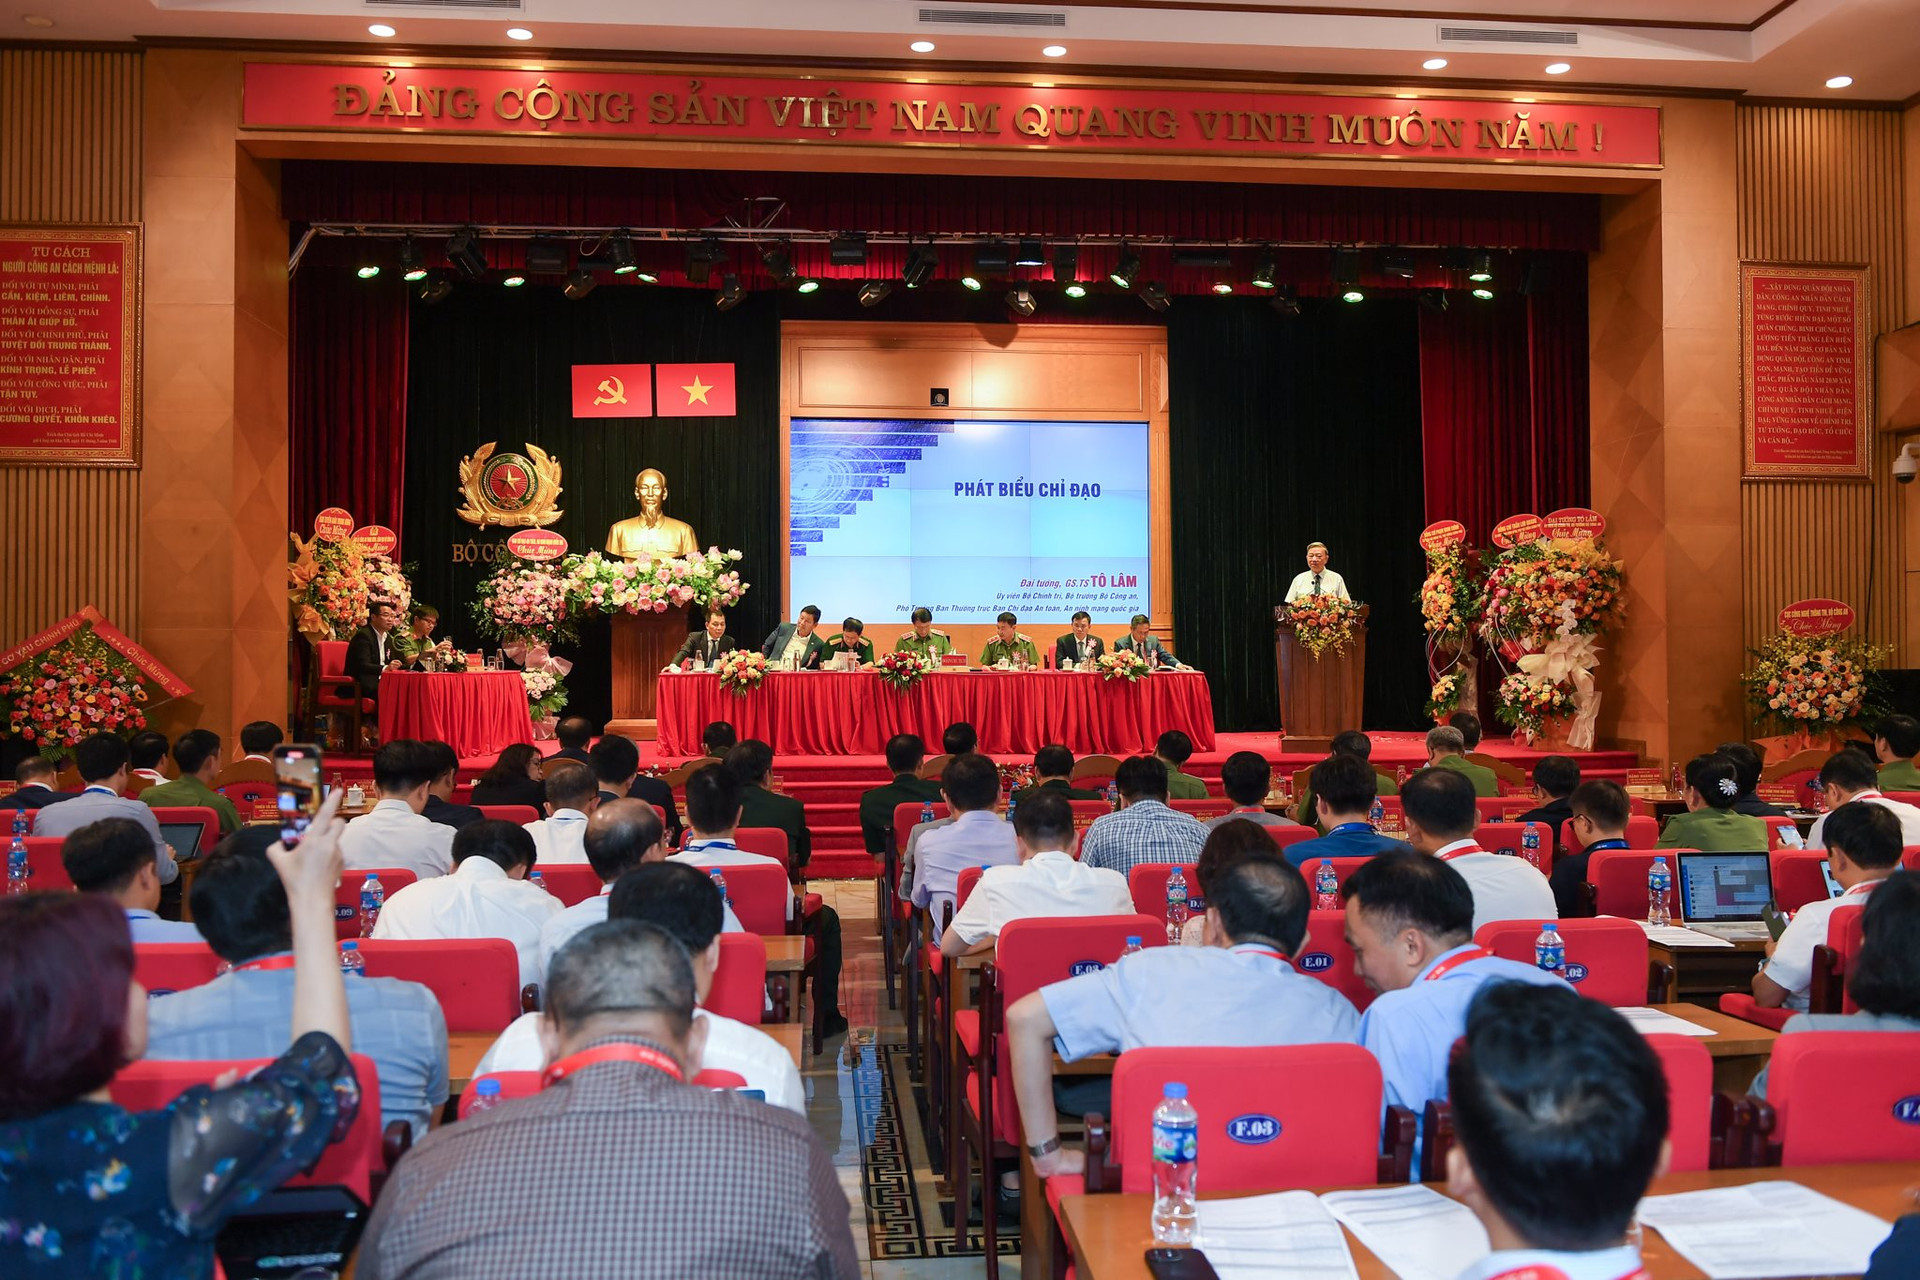 Hiệp hội An ninh mạng quốc gia giúp Việt Nam chuyển từ gia công, đại lý sang làm chủ về công nghệ, sản phẩm, dịch vụ an ninh mạng